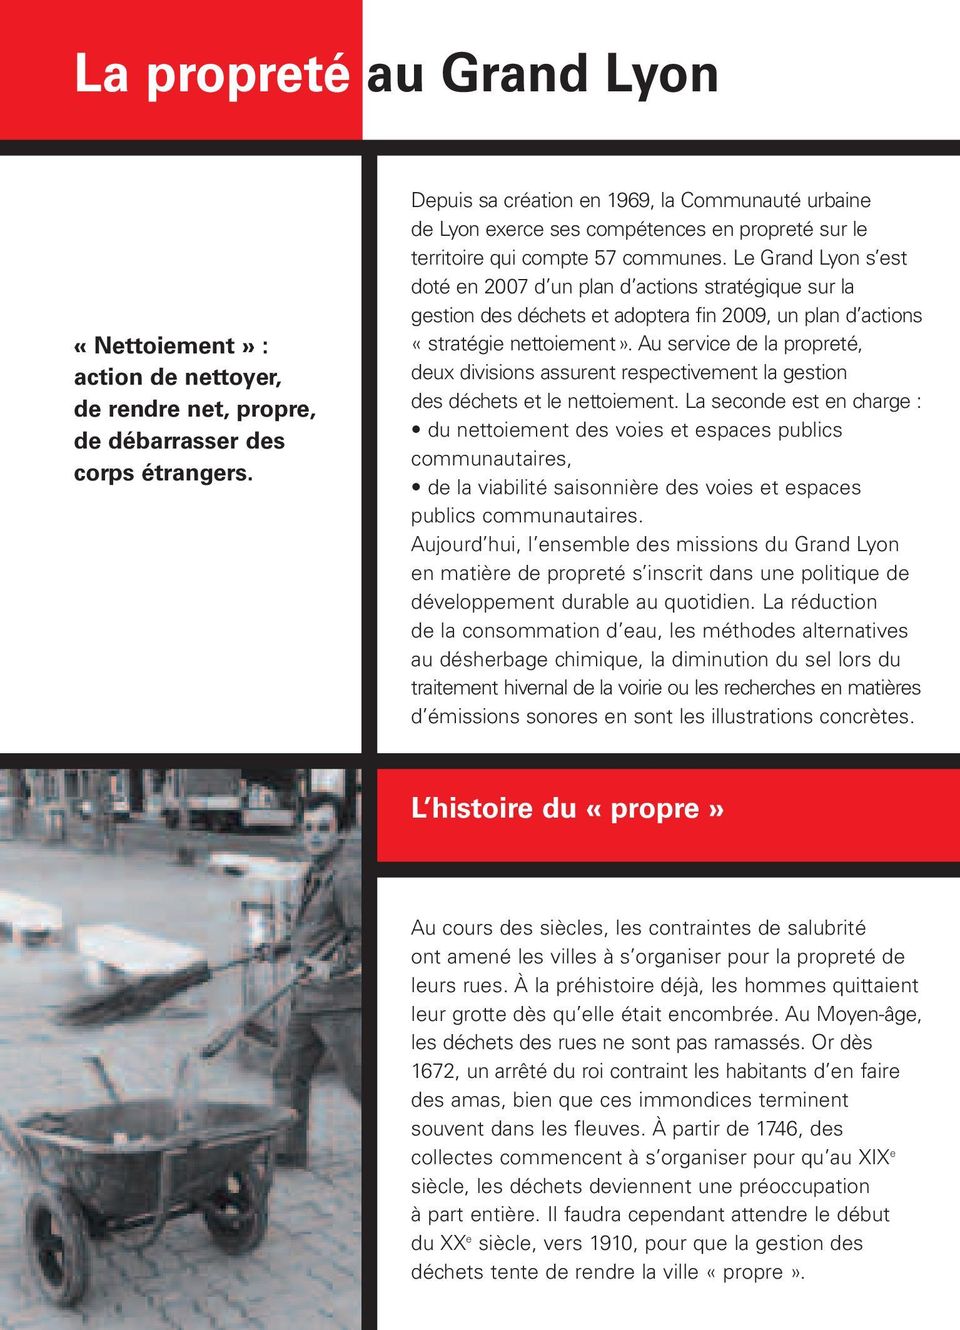 Le Grand Lyon s est doté en 2007 d un plan d actions stratégique sur la gestion des déchets et adoptera fin 2009, un plan d actions «stratégie nettoiement».